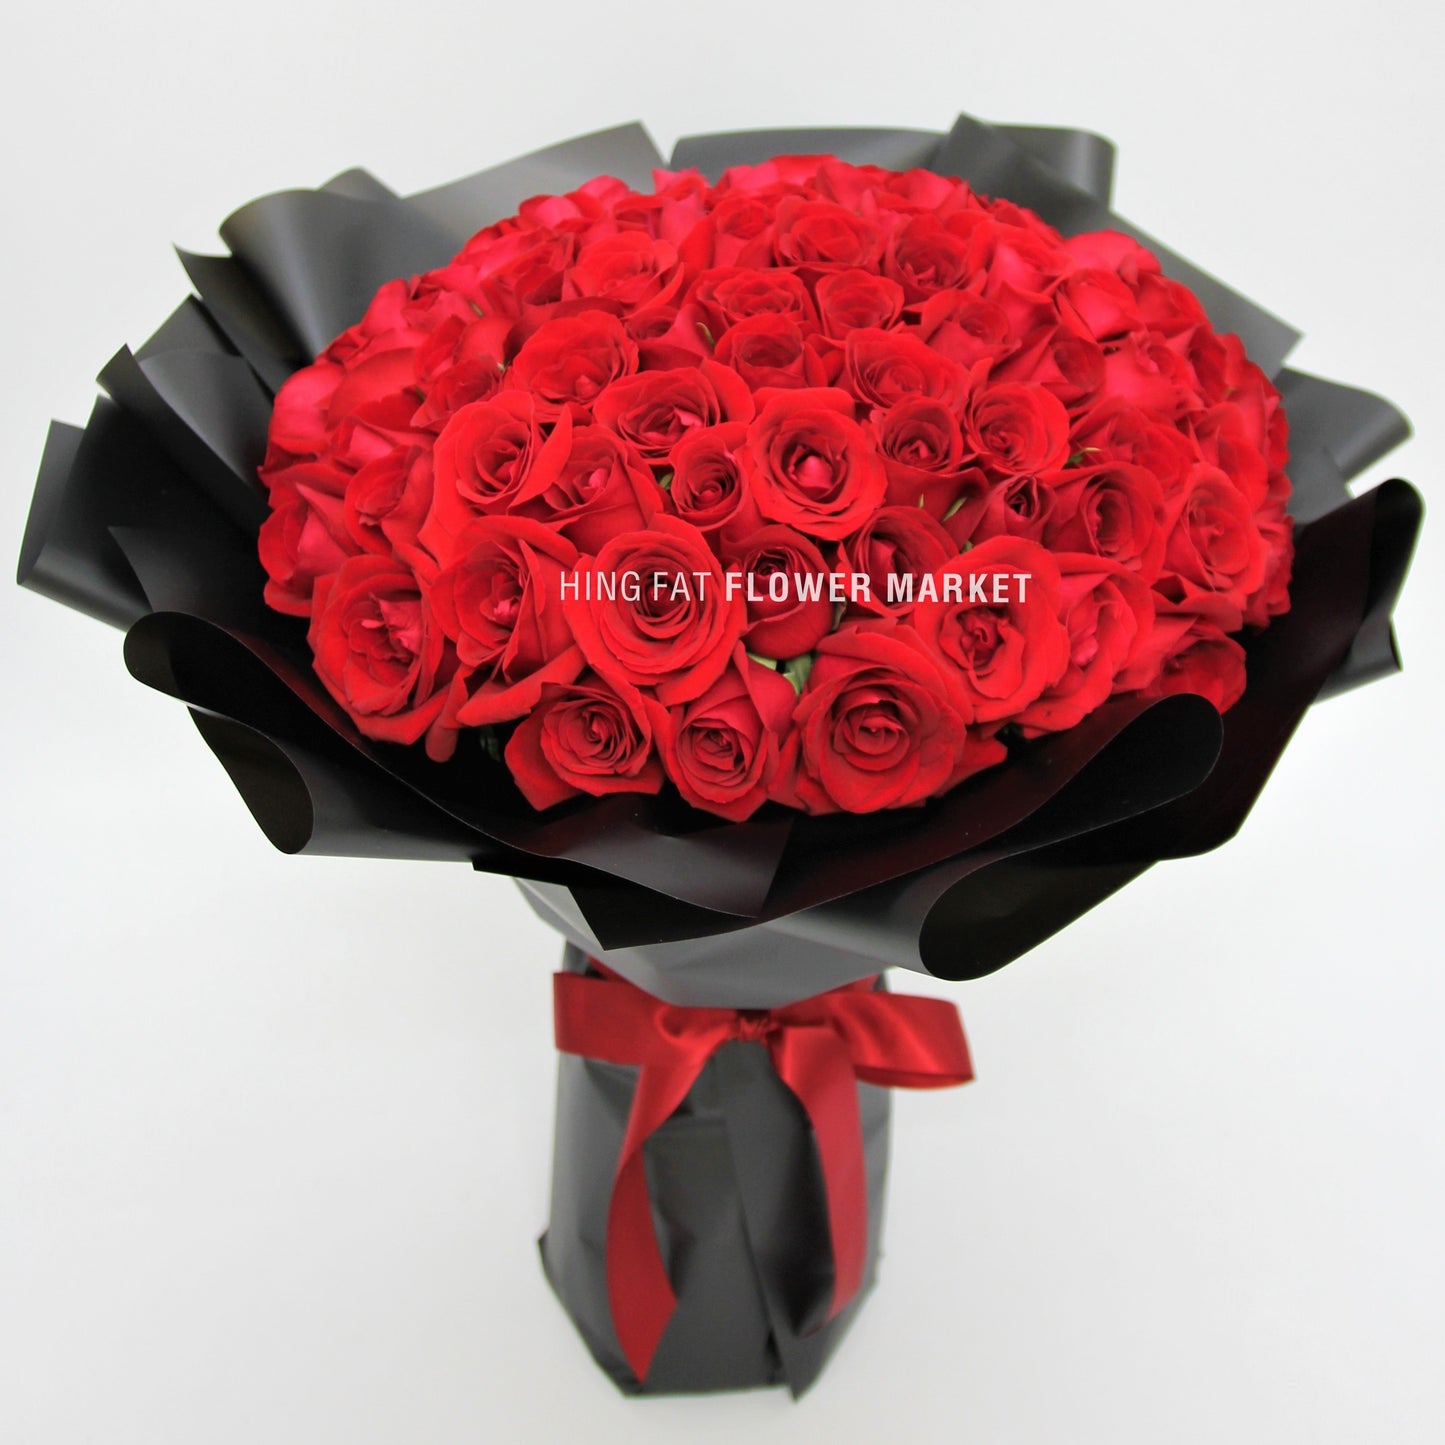 99支玫瑰花束 99 stmes of red rose bouquet